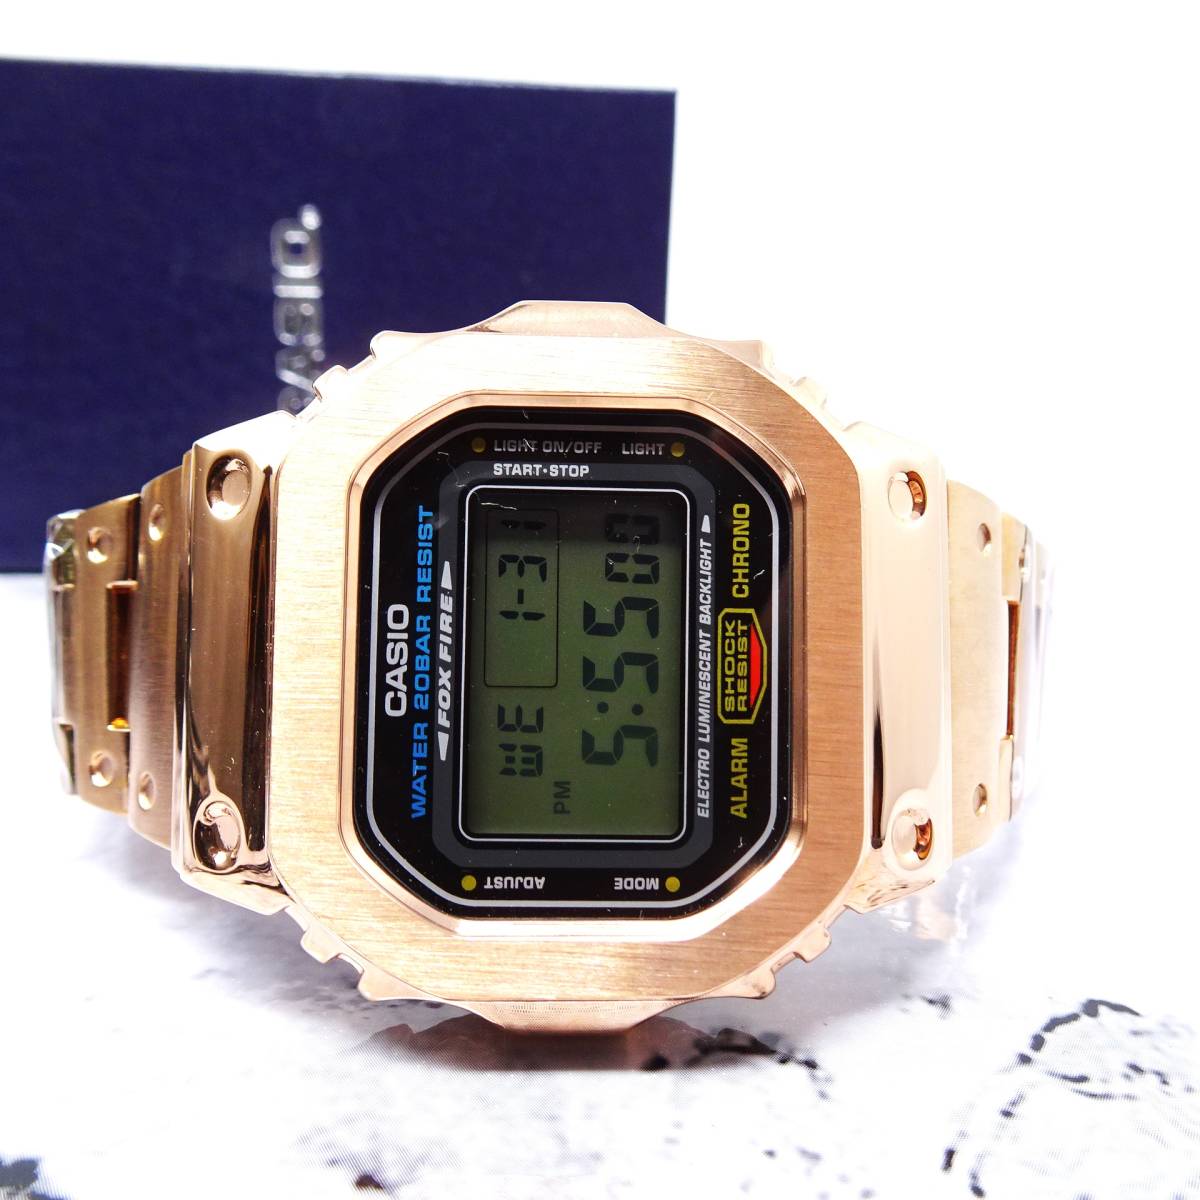 送料無料・新品・Gショックカスタム本体付きDW5600デジタル腕時計フルステンレス製ローズゴールドベゼル＆ベルト・フルメタルモデル _画像7